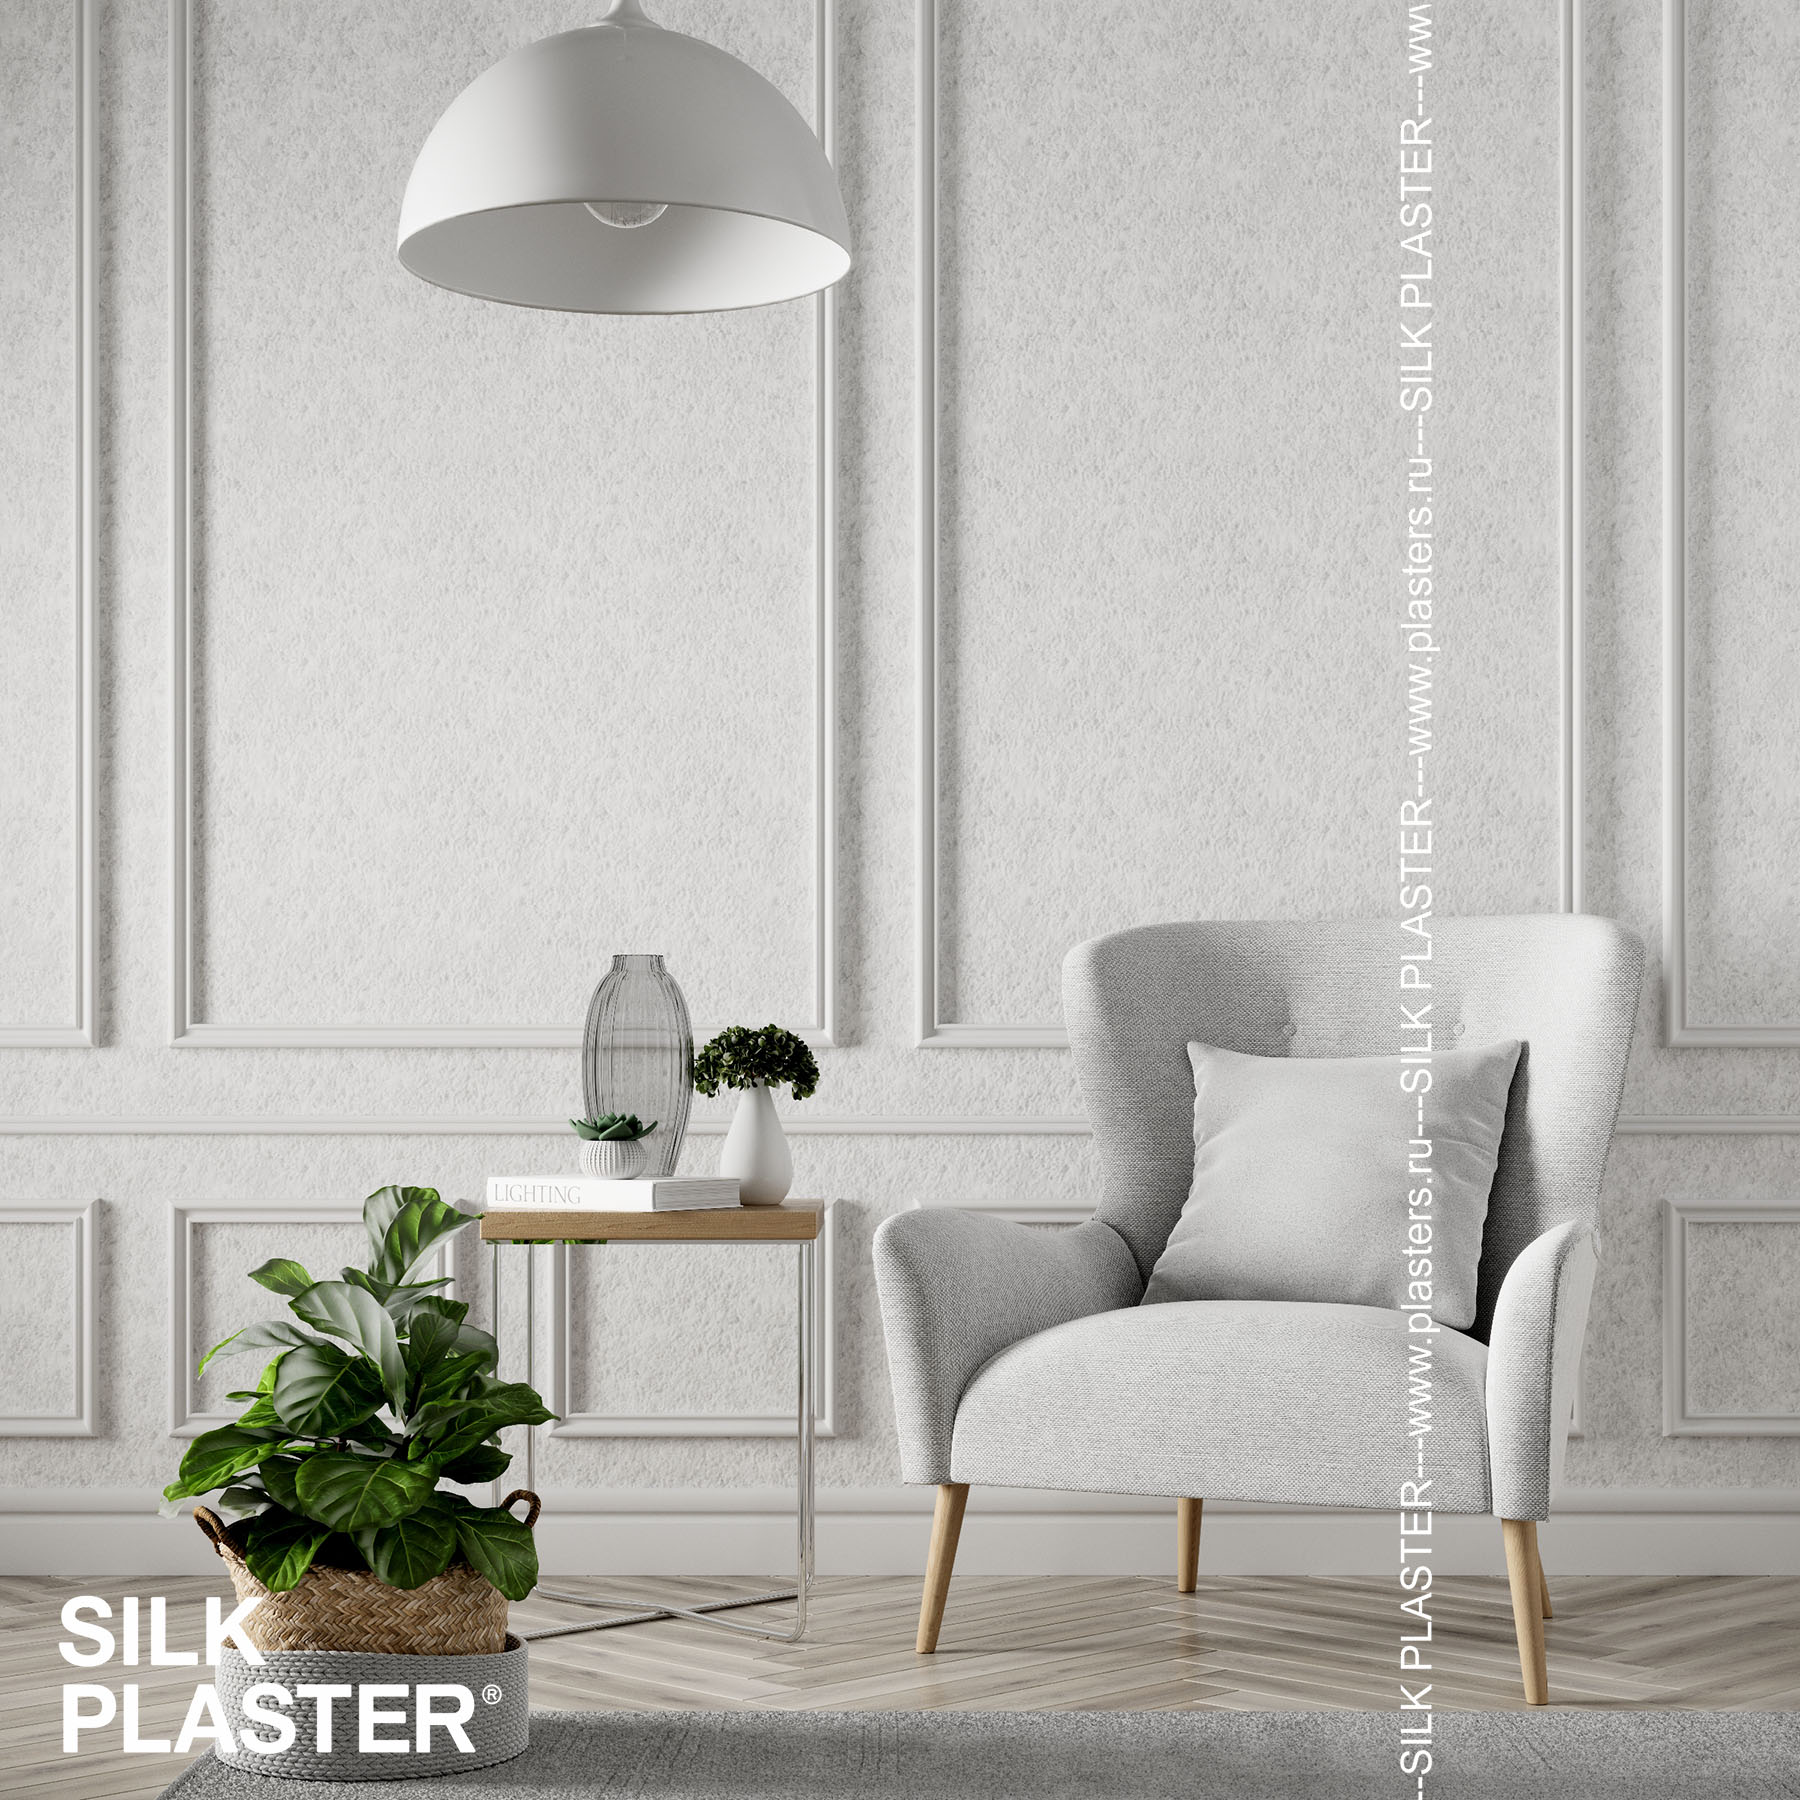 ᐉ Купить жидкие обои (шелковая декоративная штукатурка) Silk Plaster Стандарт